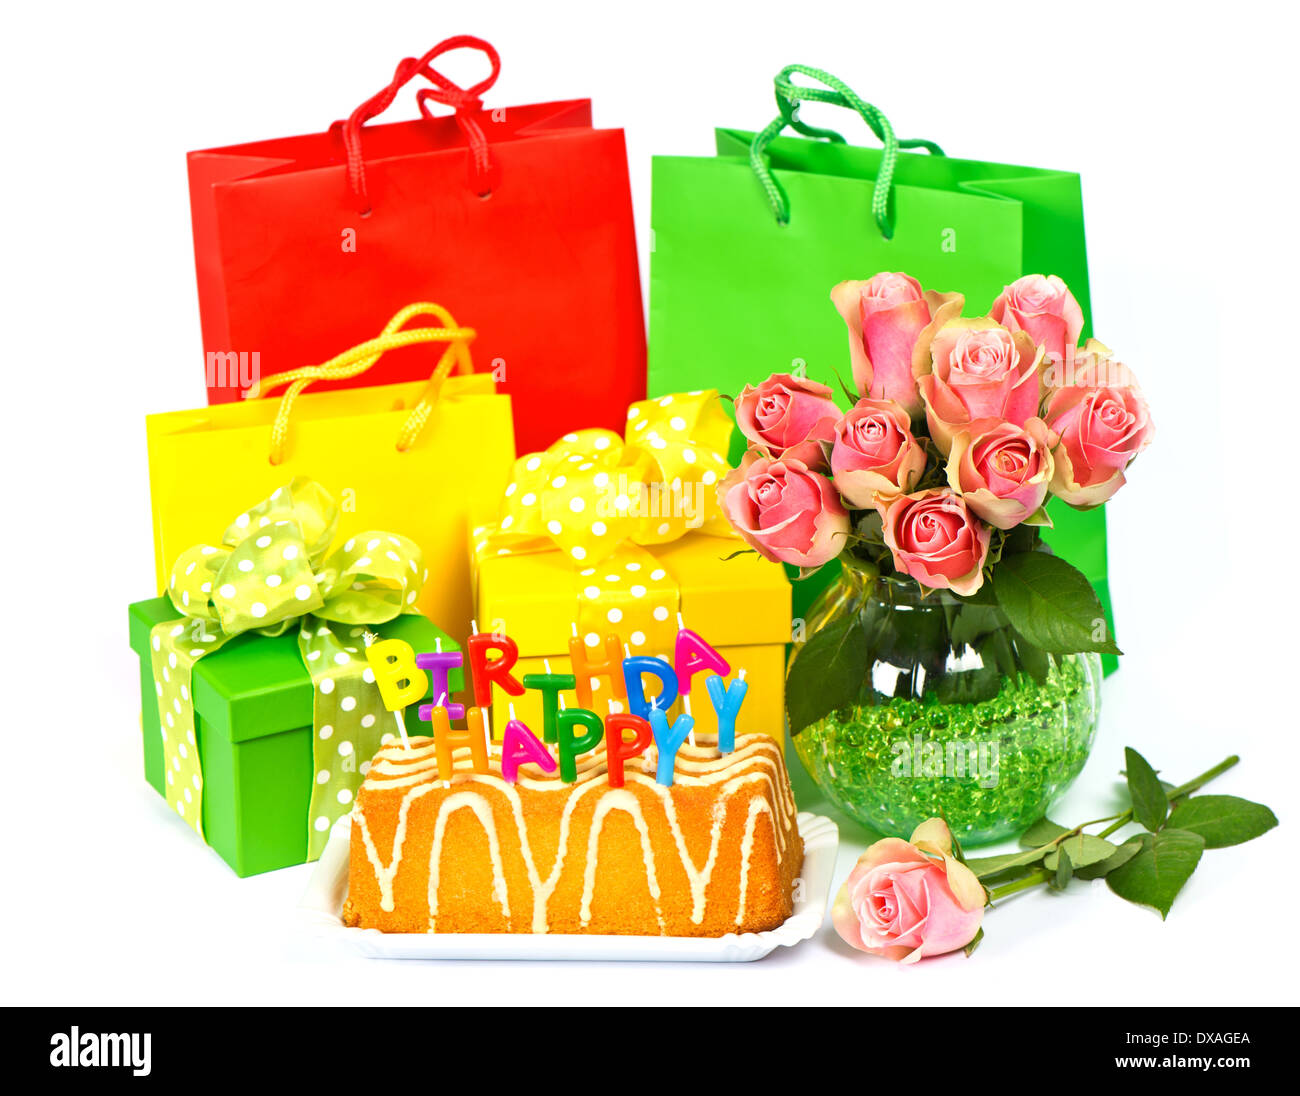 Herzlichen Glückwunsch zum Geburtstag! Kuchen mit Kerzen, Blumen und Geschenk Stockfoto